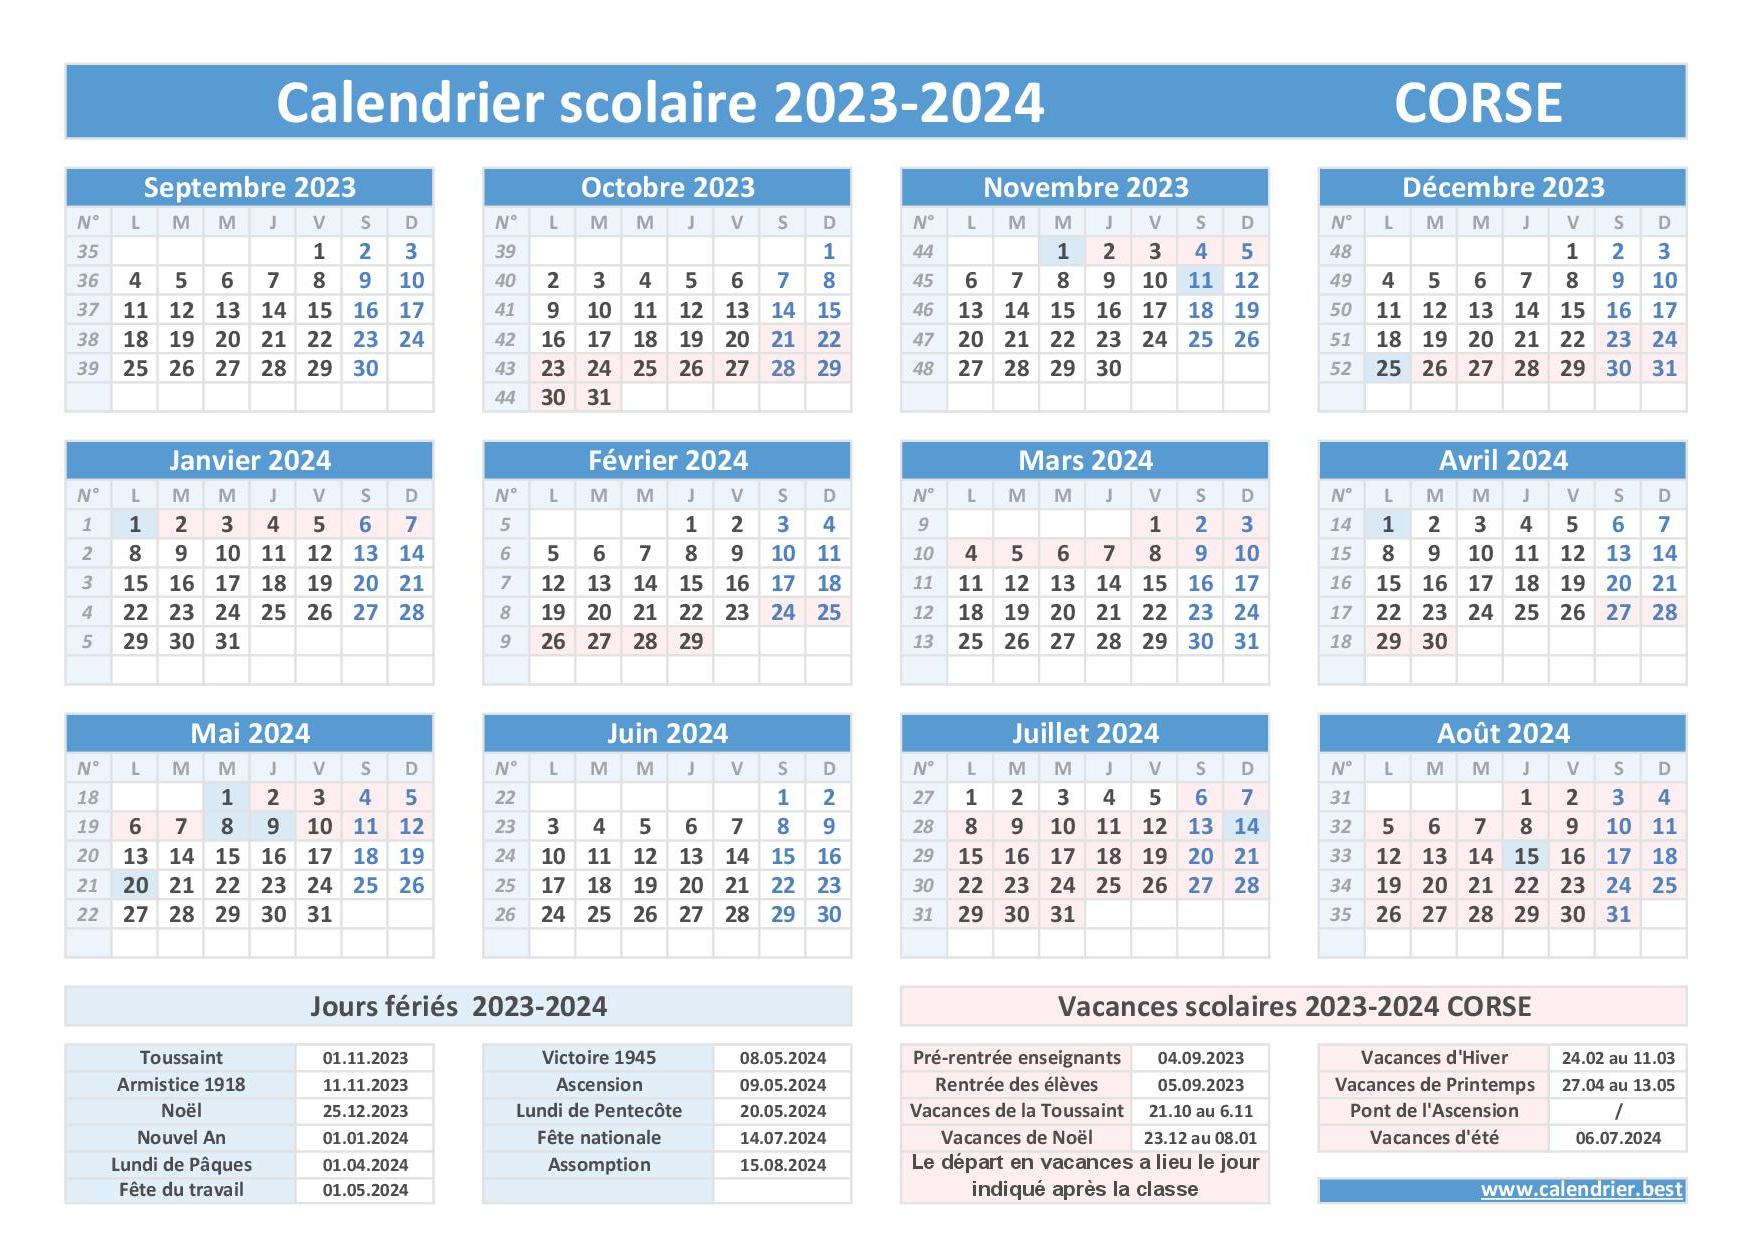 Académie de Corse : dates officielles des vacances scolaires 2023-2024